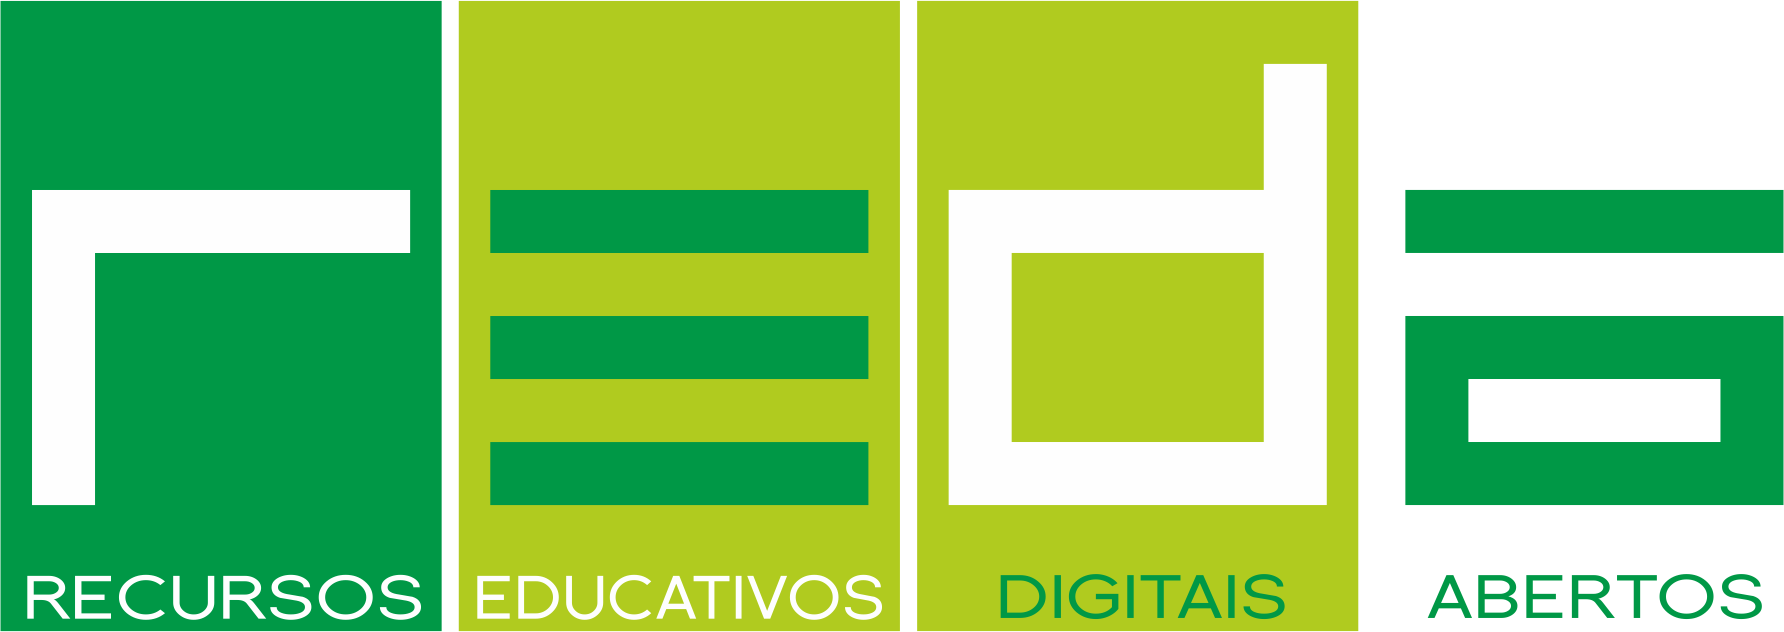 Recursos Educativos Digitais e Abertos (REDA) é uma plataforma dedicada à disponibilização de conteúdos educativos para a comunidade escolar.